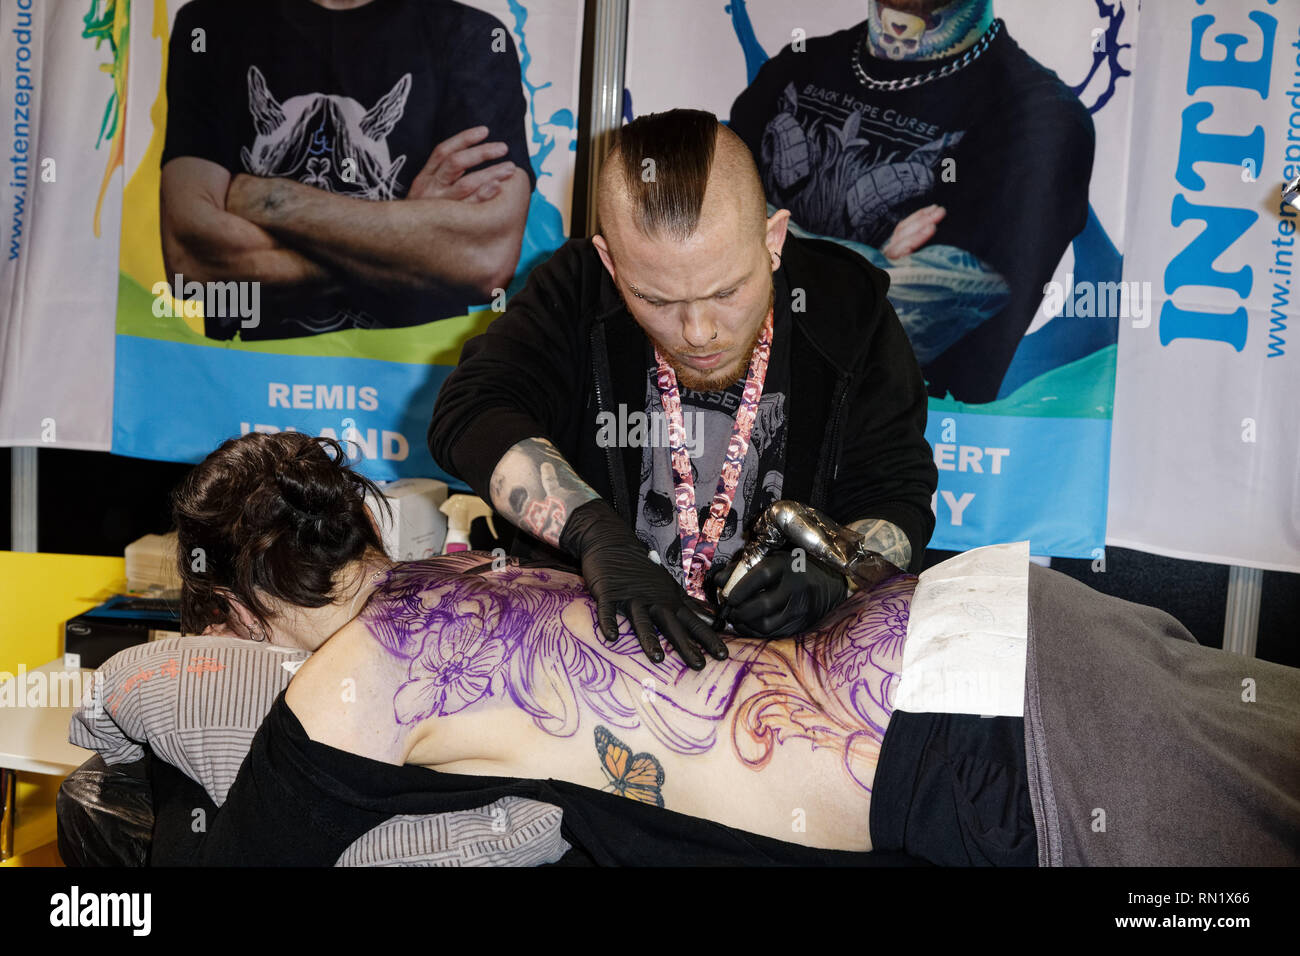 París, Francia. 15 Feb, 2019. Artista, Julian Siebert durante la 9ª edición del Mondial du Tatouage (Mundo tatuaje) el 15 de febrero de 2019 en la Grande Halle de la Villette, en París, Francia. Crédito: Bernard Menigault/Alamy Live News Foto de stock